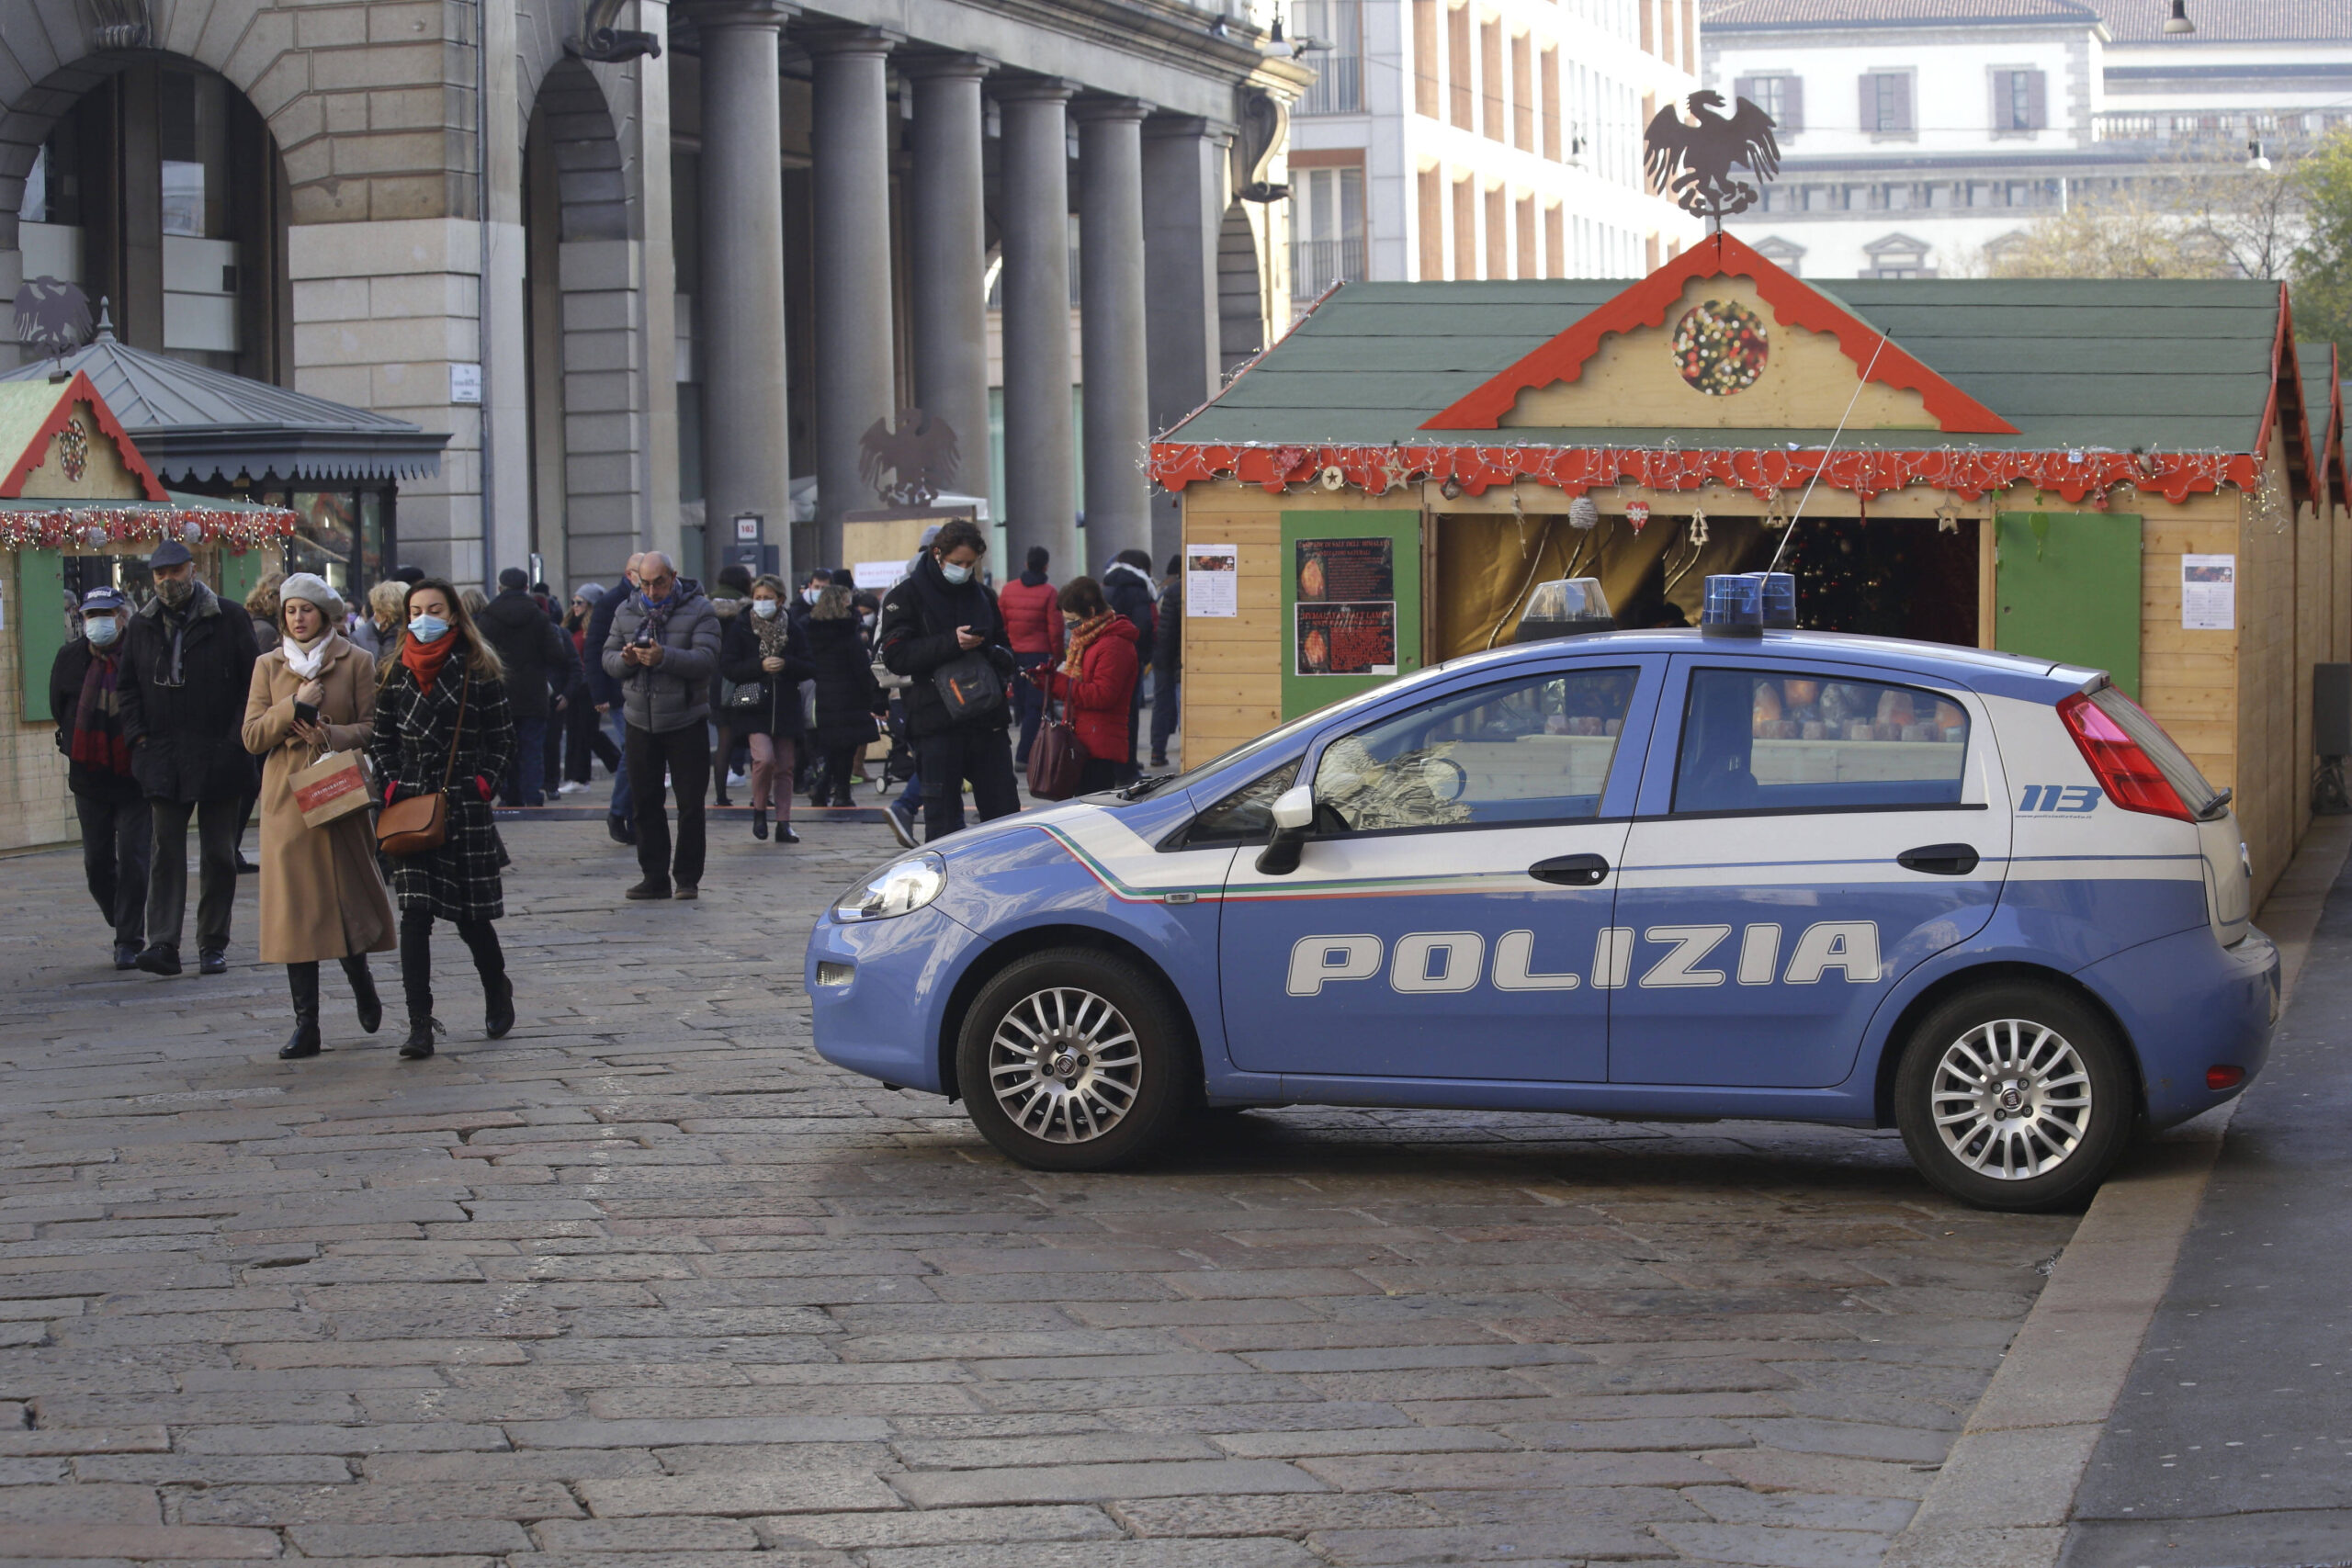 Polizei-Auto in Italien